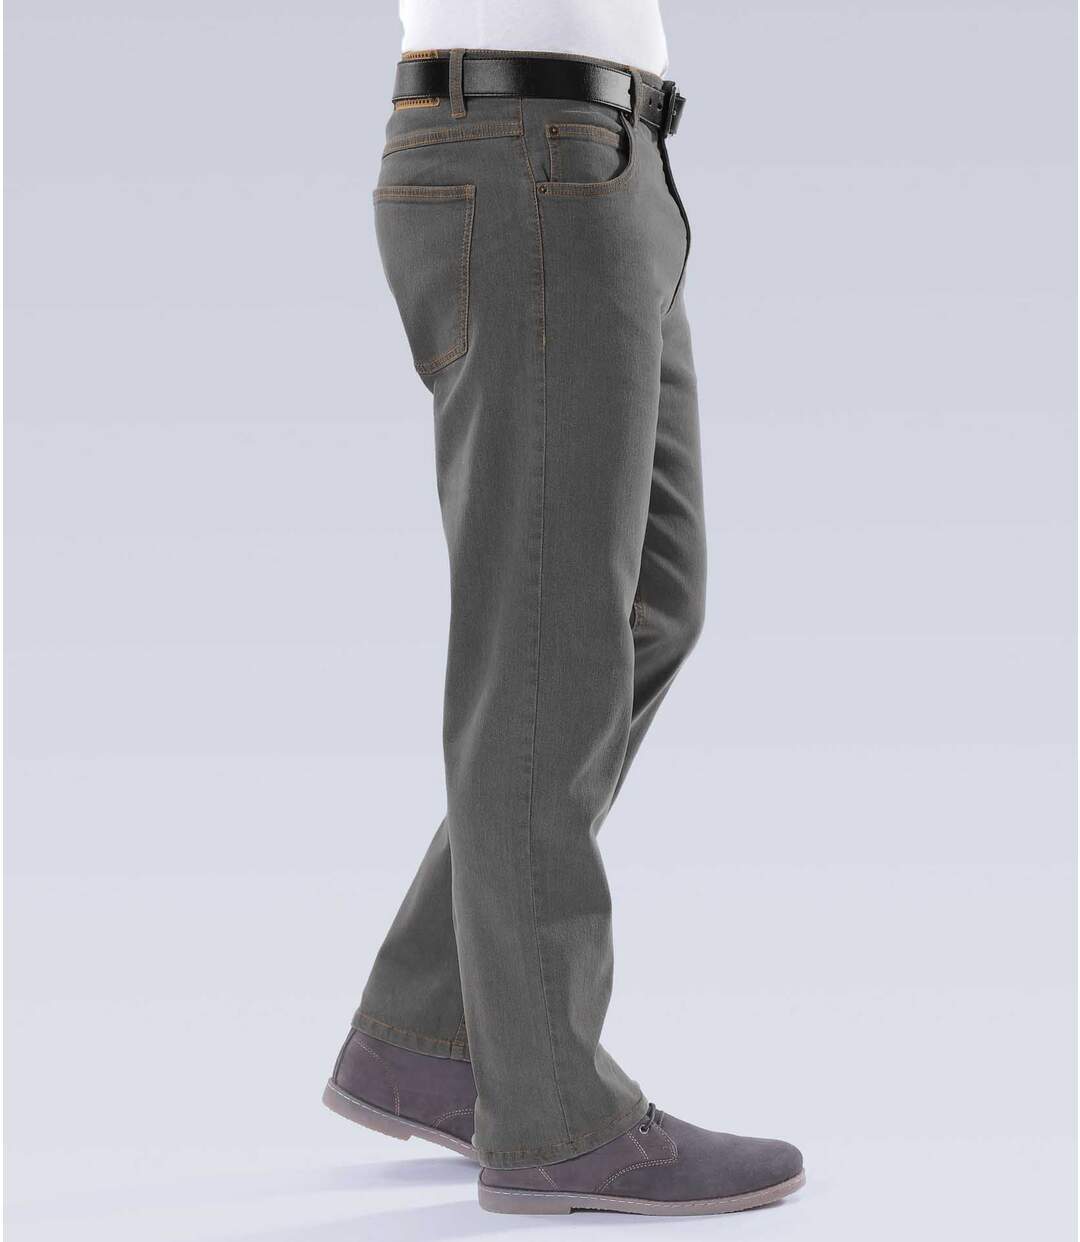 Sada 2 pohodlných strečových džínů rovného střihu Regular Atlas For Men